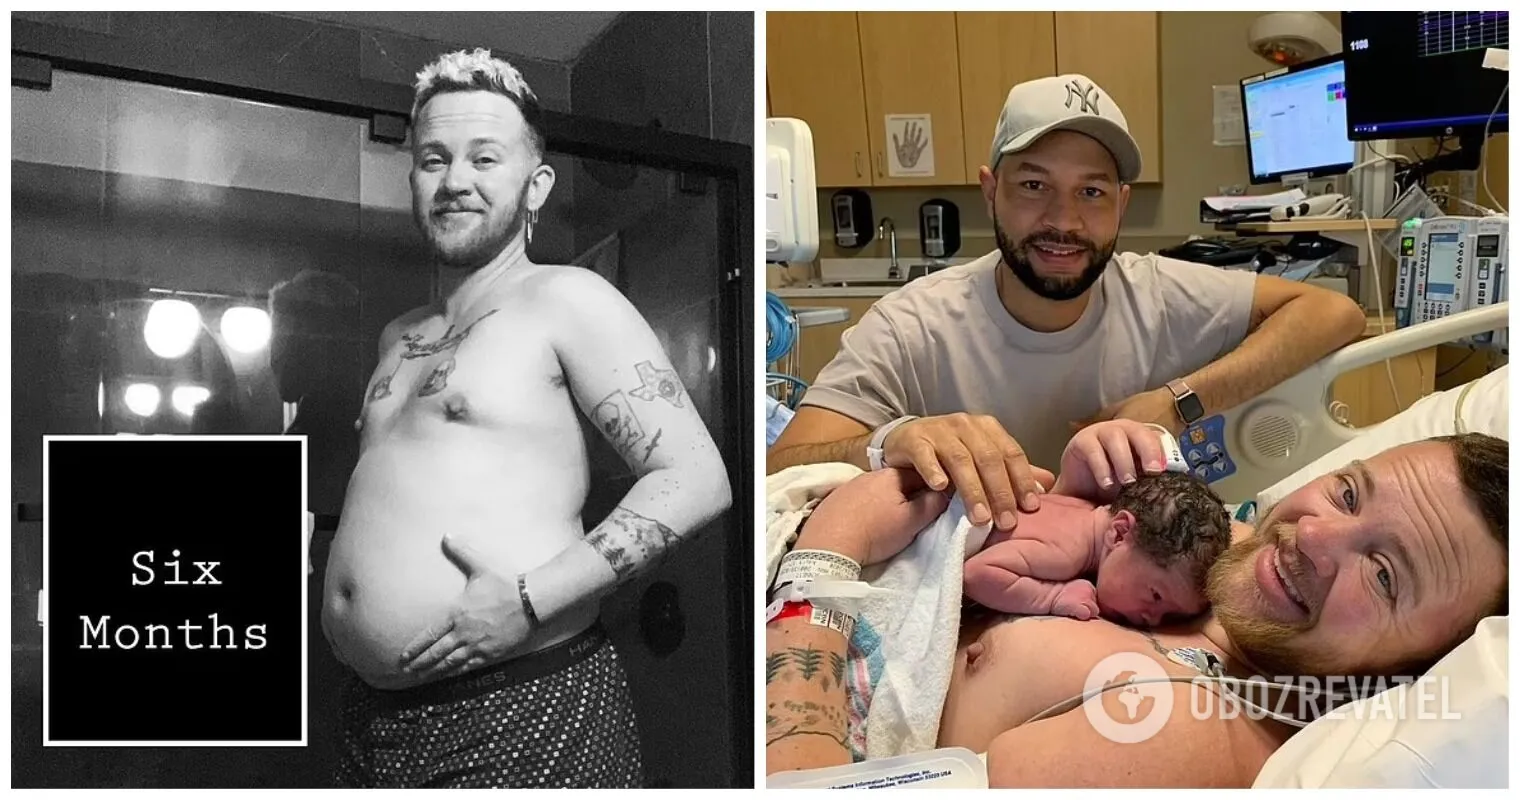 Мужчина рожденный 19. Трансгендерный мужчина родил ребенка. Беременный мужчина родил ребенка.